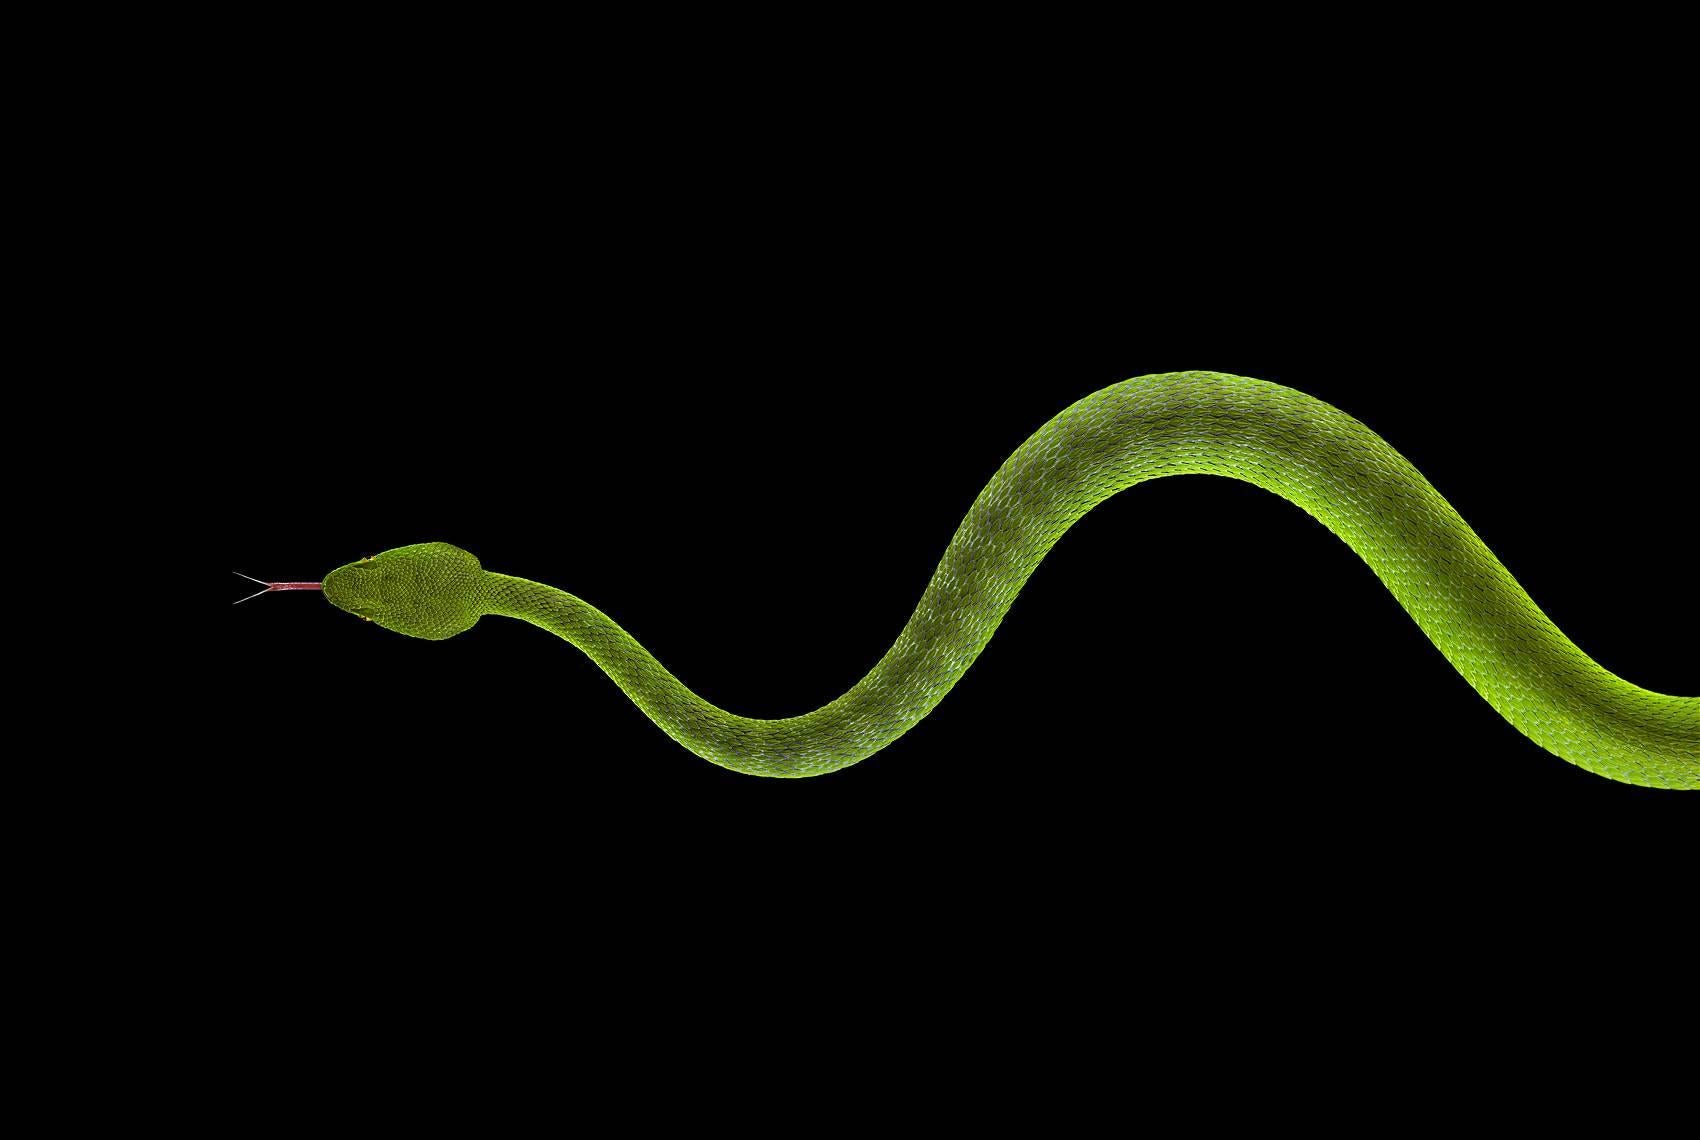 Portrait Photograph Brad Wilson - Viper n°3 - Photographie de portrait d'animal, serpent vert au fond